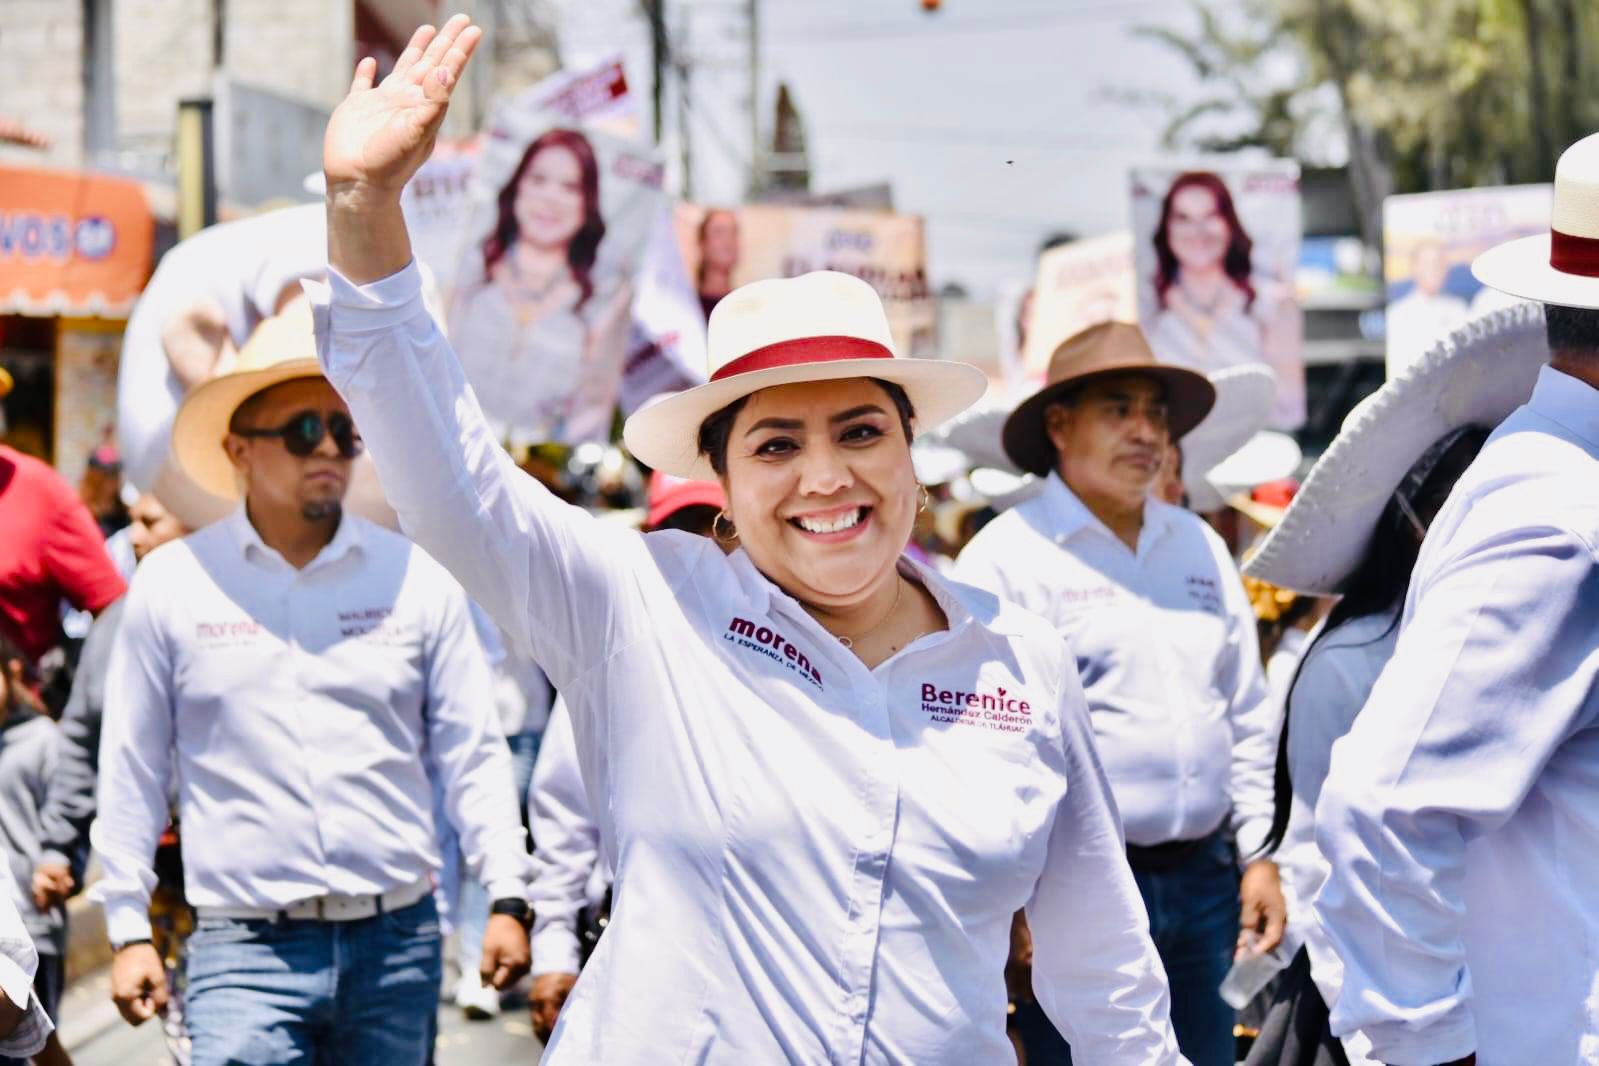 Berenice Hernández puntera en encuestas para continuar en la Alcaldía Tláhuac